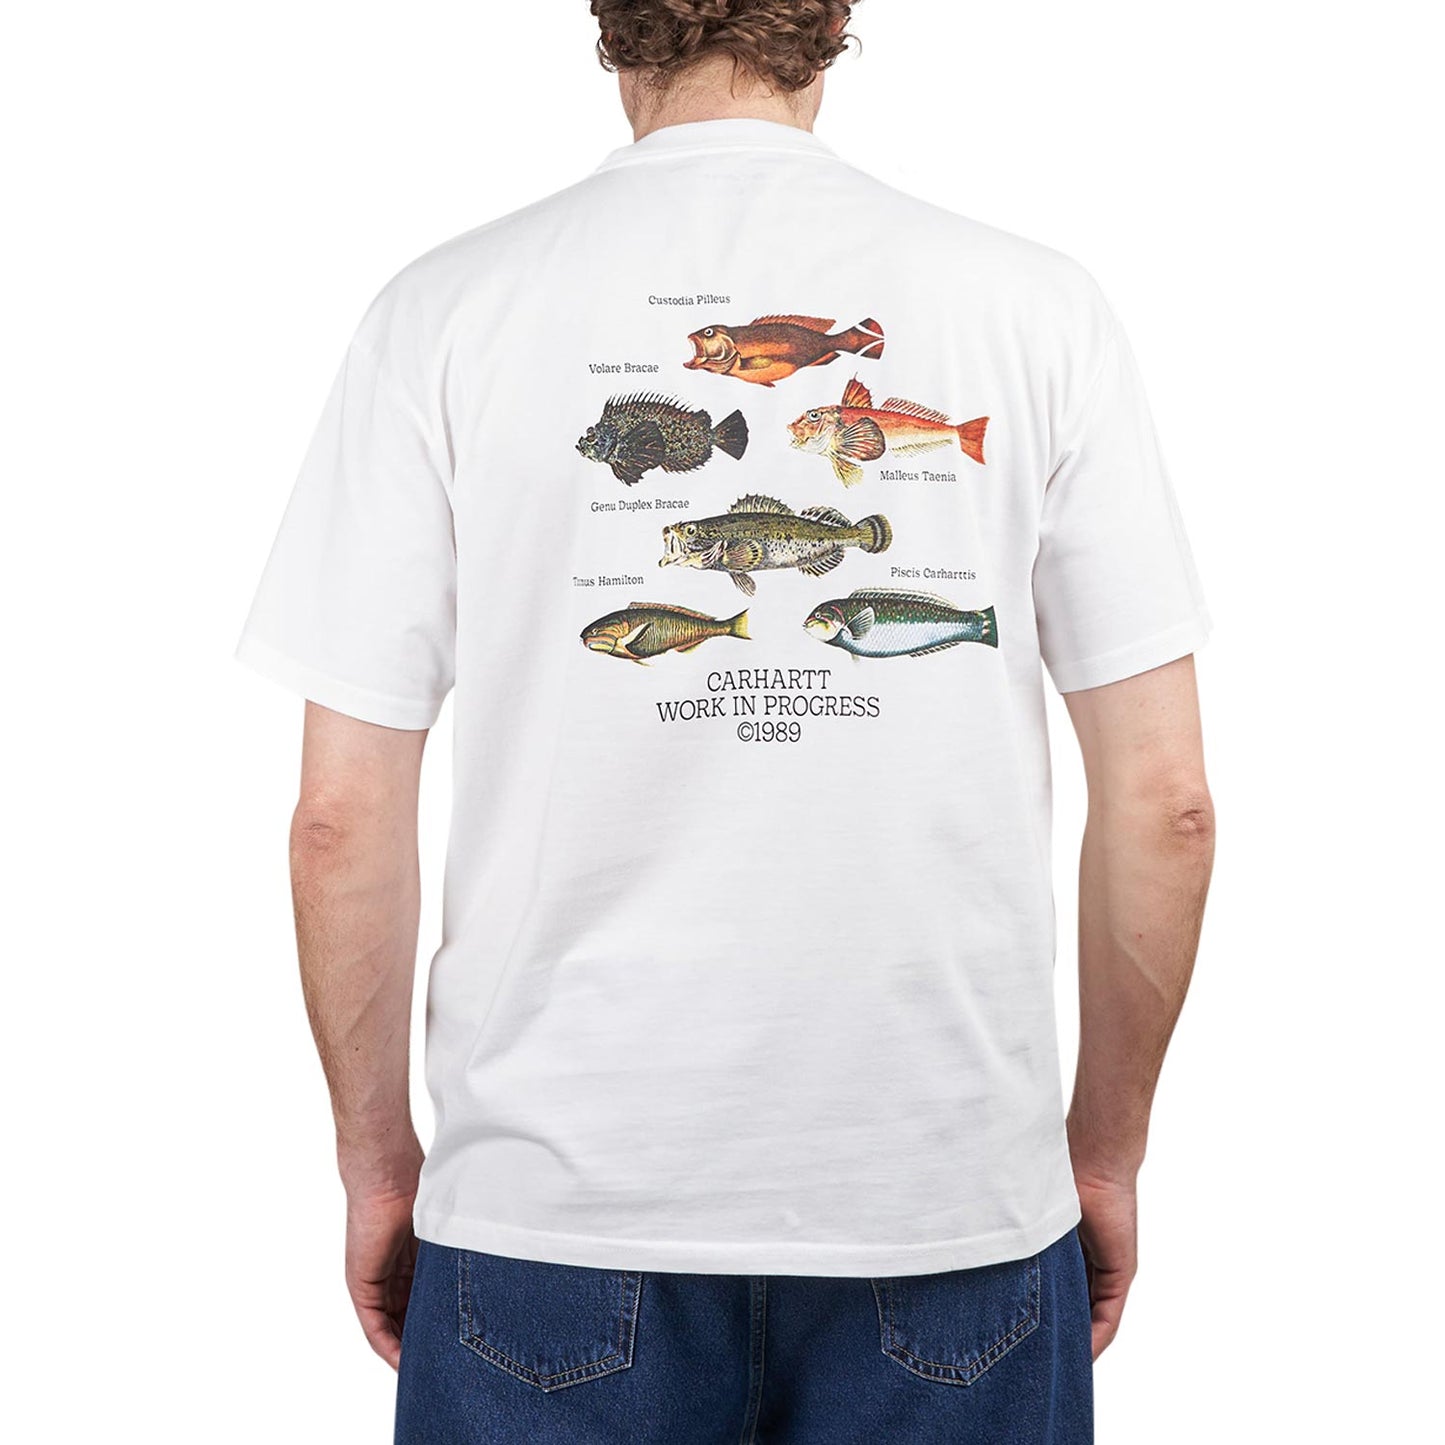 Carhartt WIP S/S Fish T-Shirt (White) I033120.02.XX.03 - Allike Store